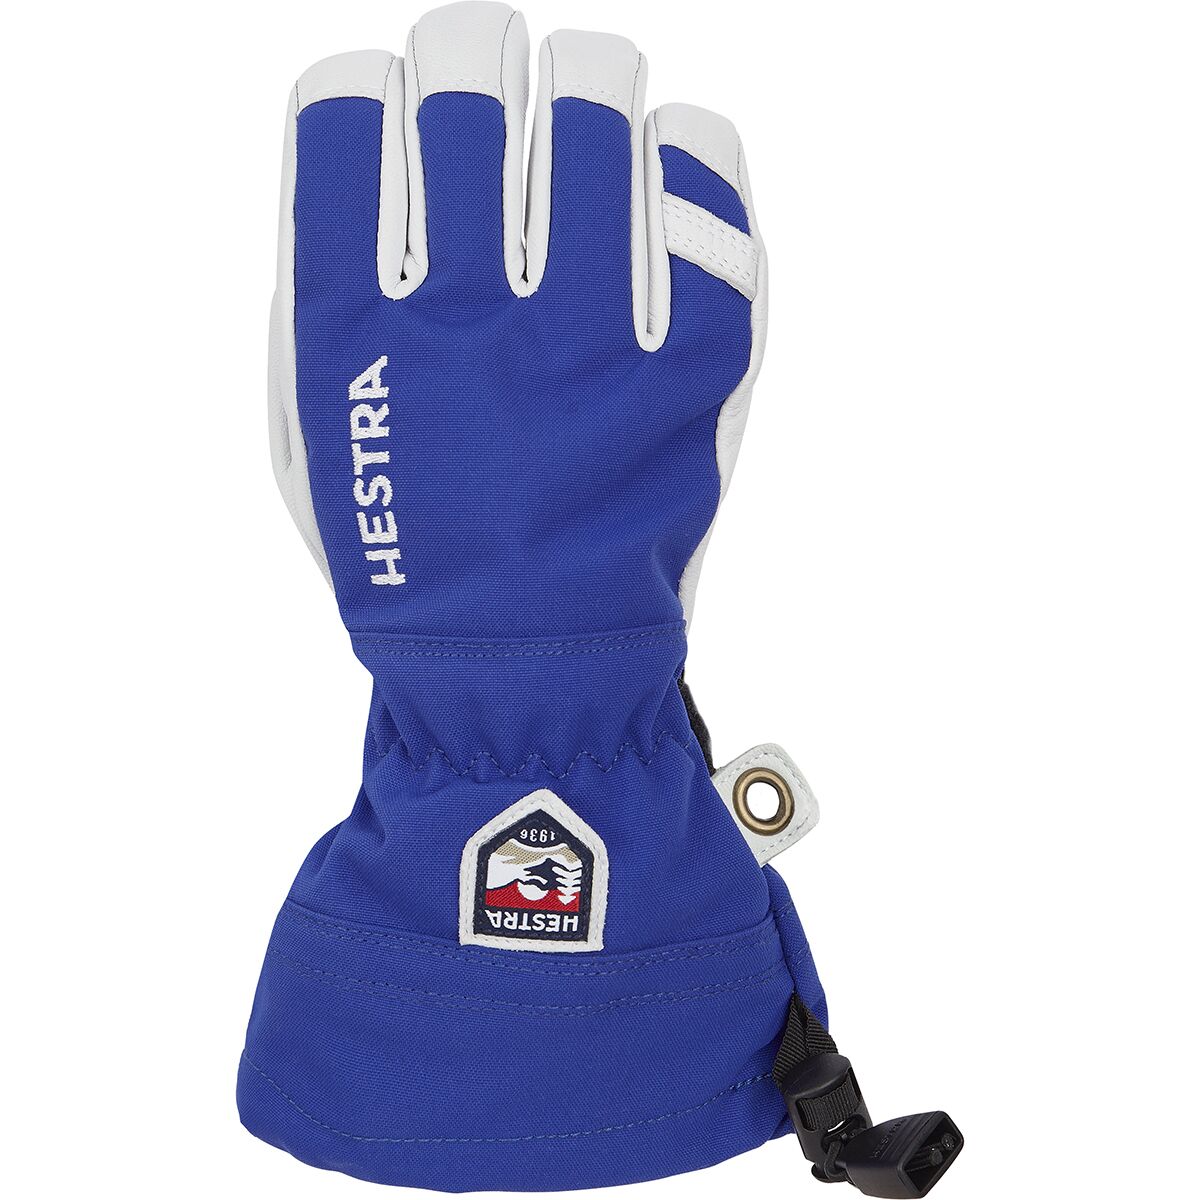 Heli Ski Junior Glove - Kids